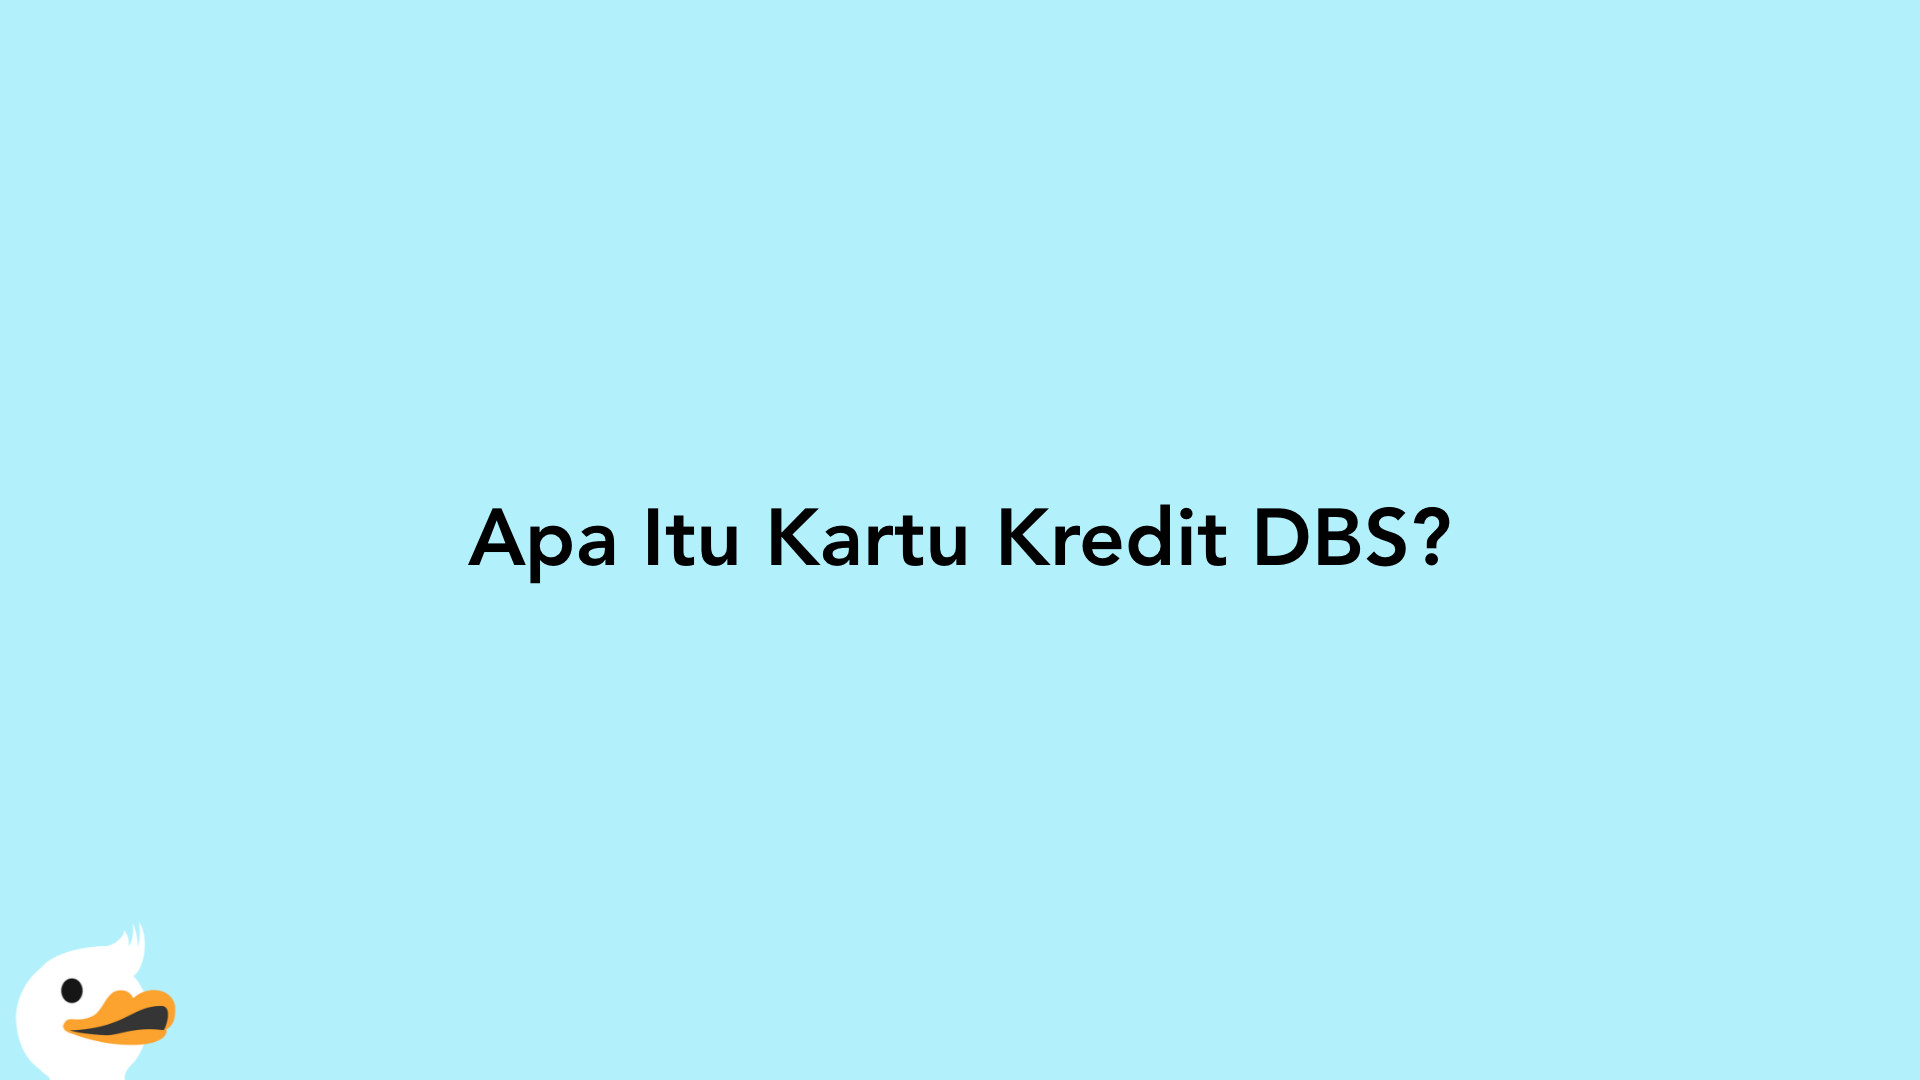 Apa Itu Kartu Kredit DBS?